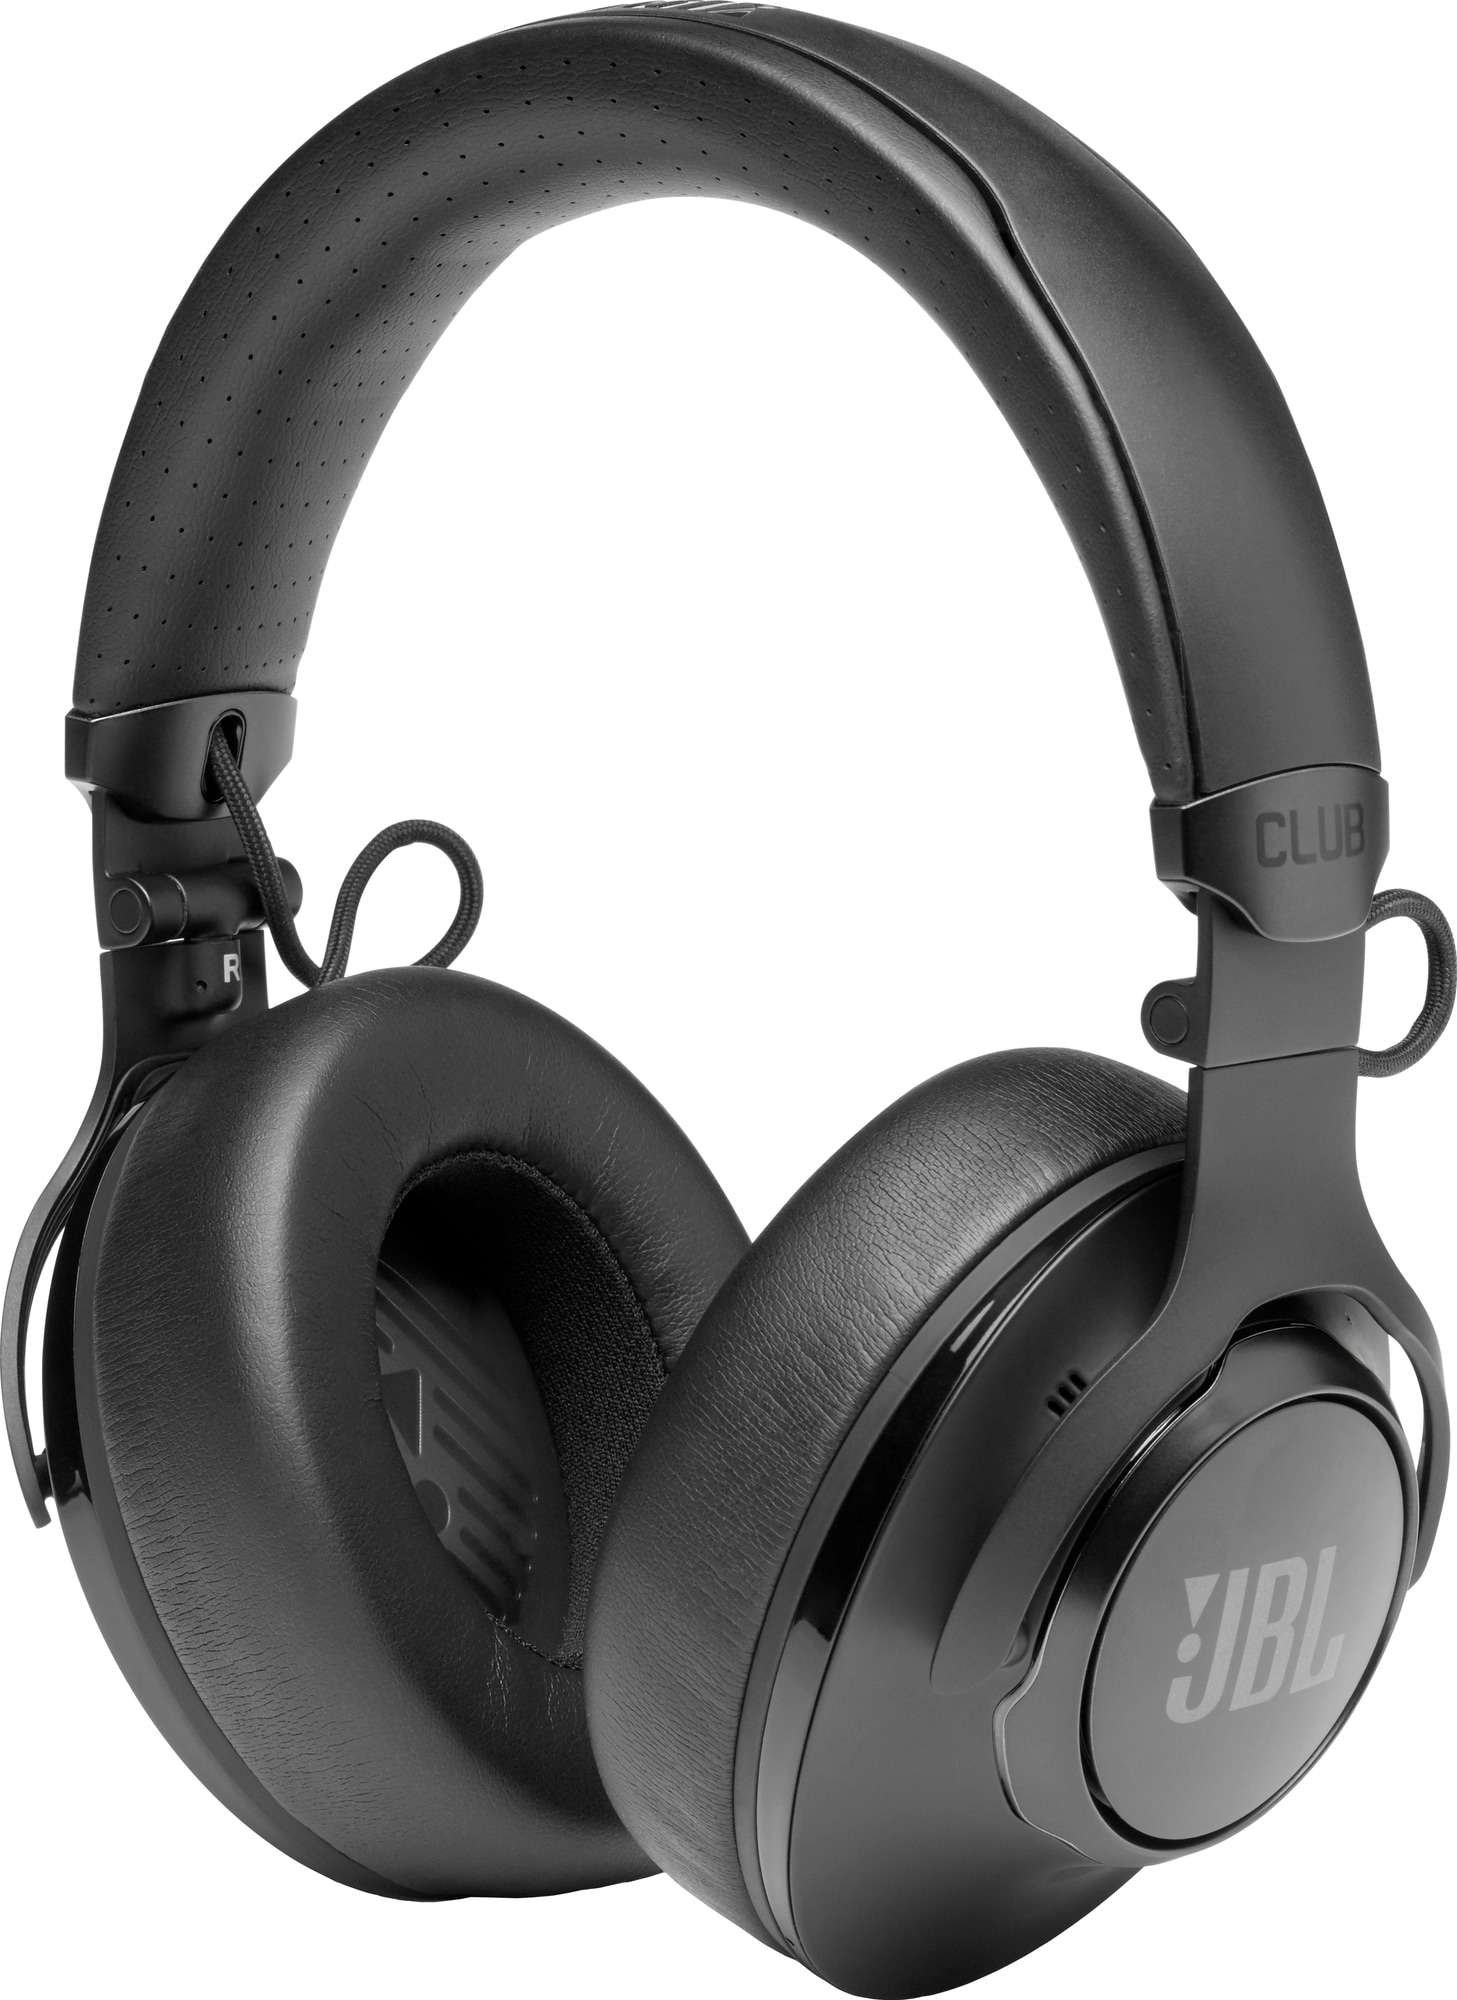 JBL CLUB 950NC trådløse around-ear høretelefoner (sort) | Elgiganten